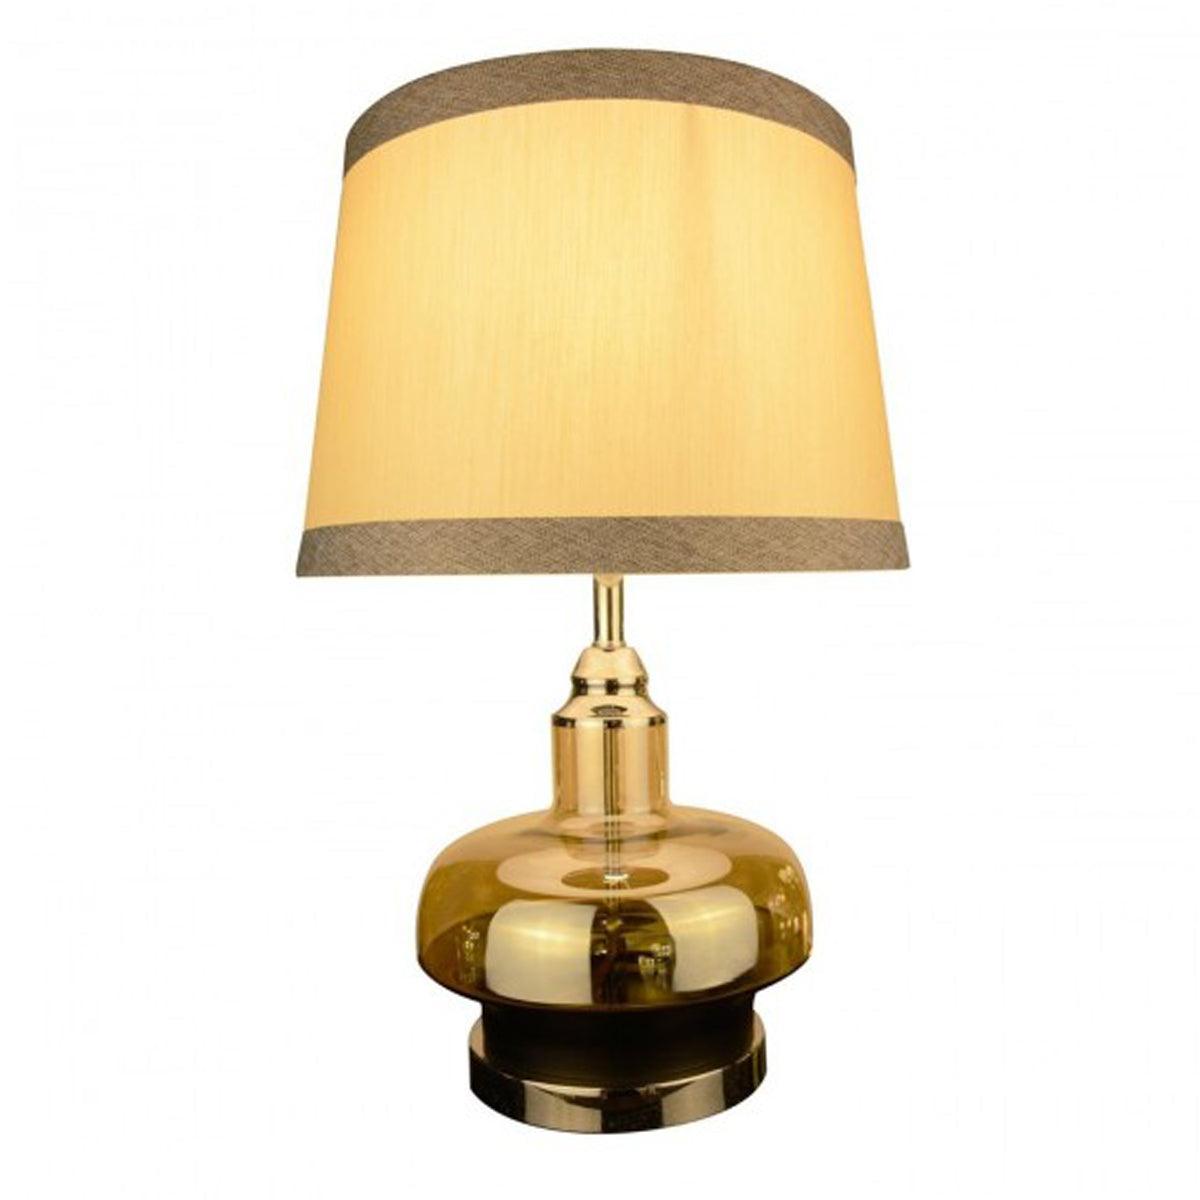 SEVERN DESIGNER TABLE LAMP - Ankur Lighting